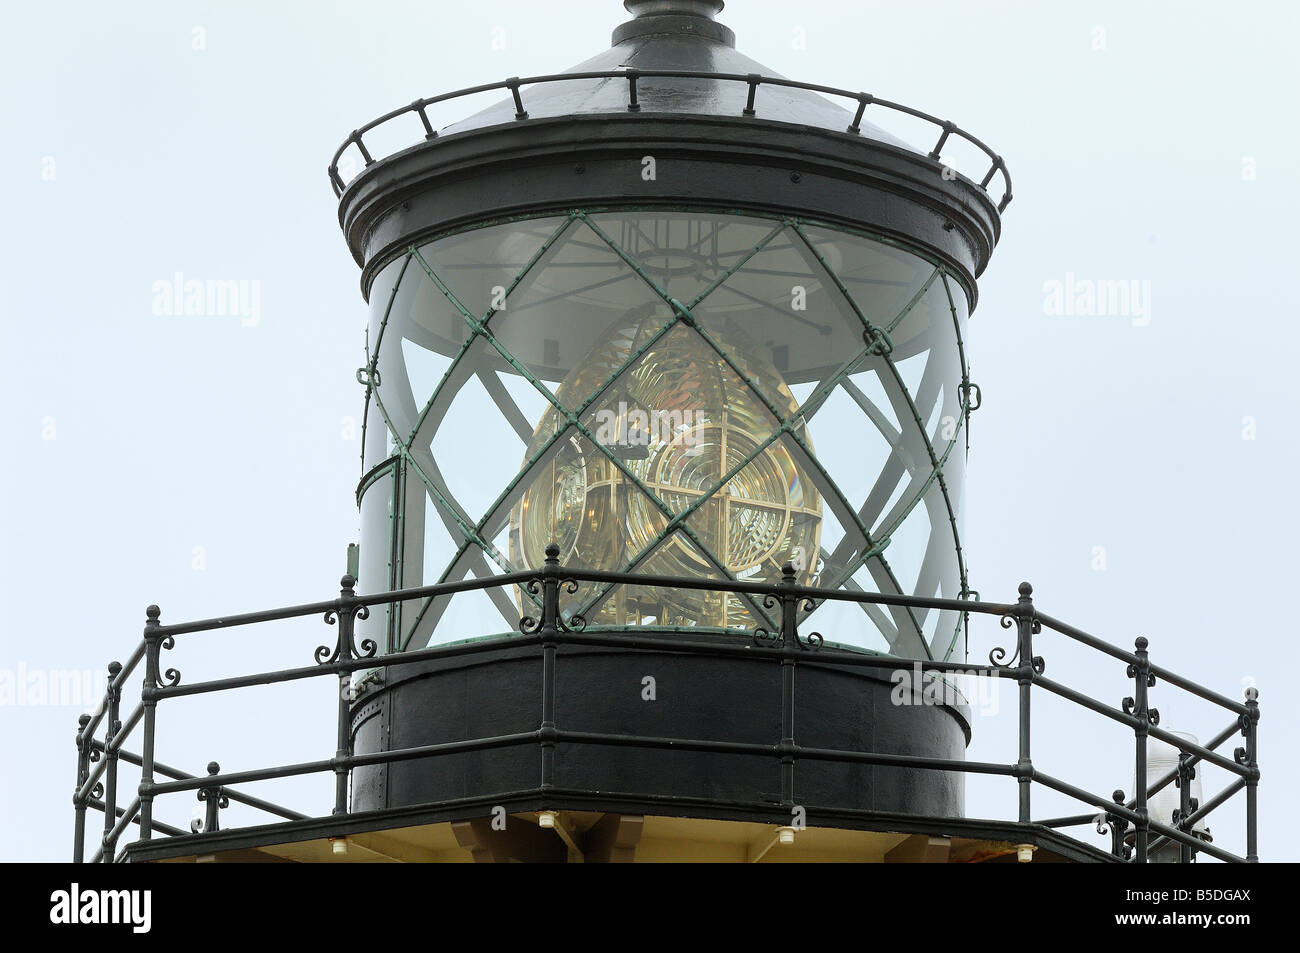 Große Fresnel-Linse der Leuchtturm Leuchtfeuer Stockfotografie - Alamy